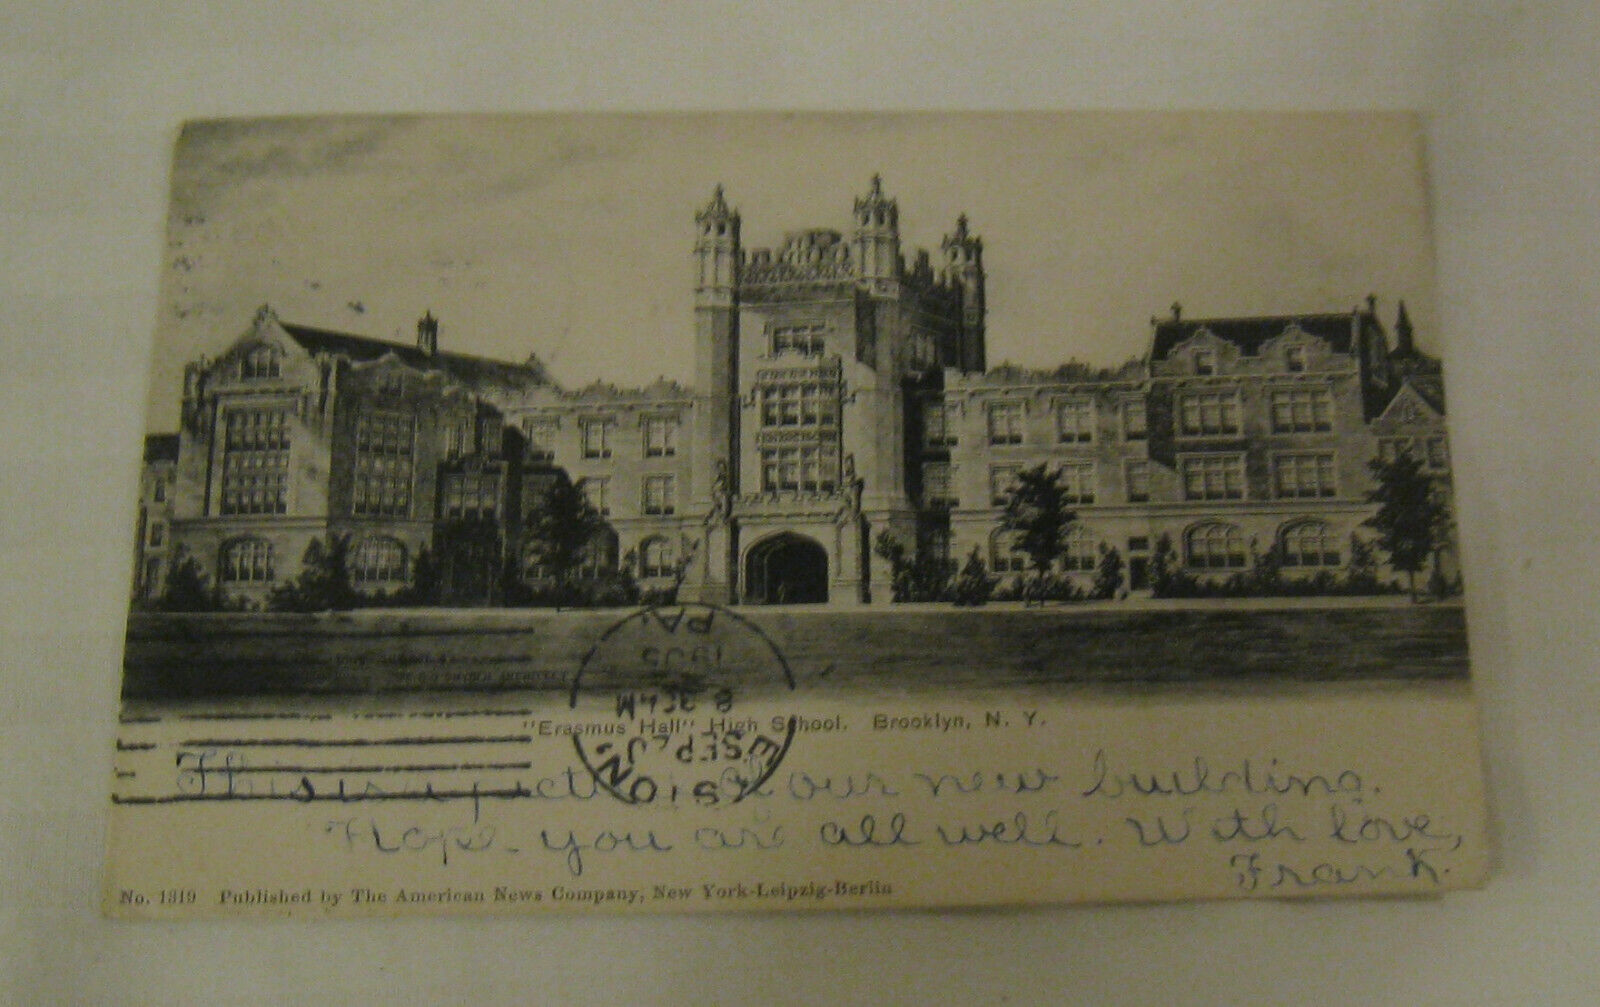 SCARCE 1905 BROOKLYN NY PHOTO POSTCARD “ERASMUS HALL HIGH SCHOOL” BROOKLYN postm